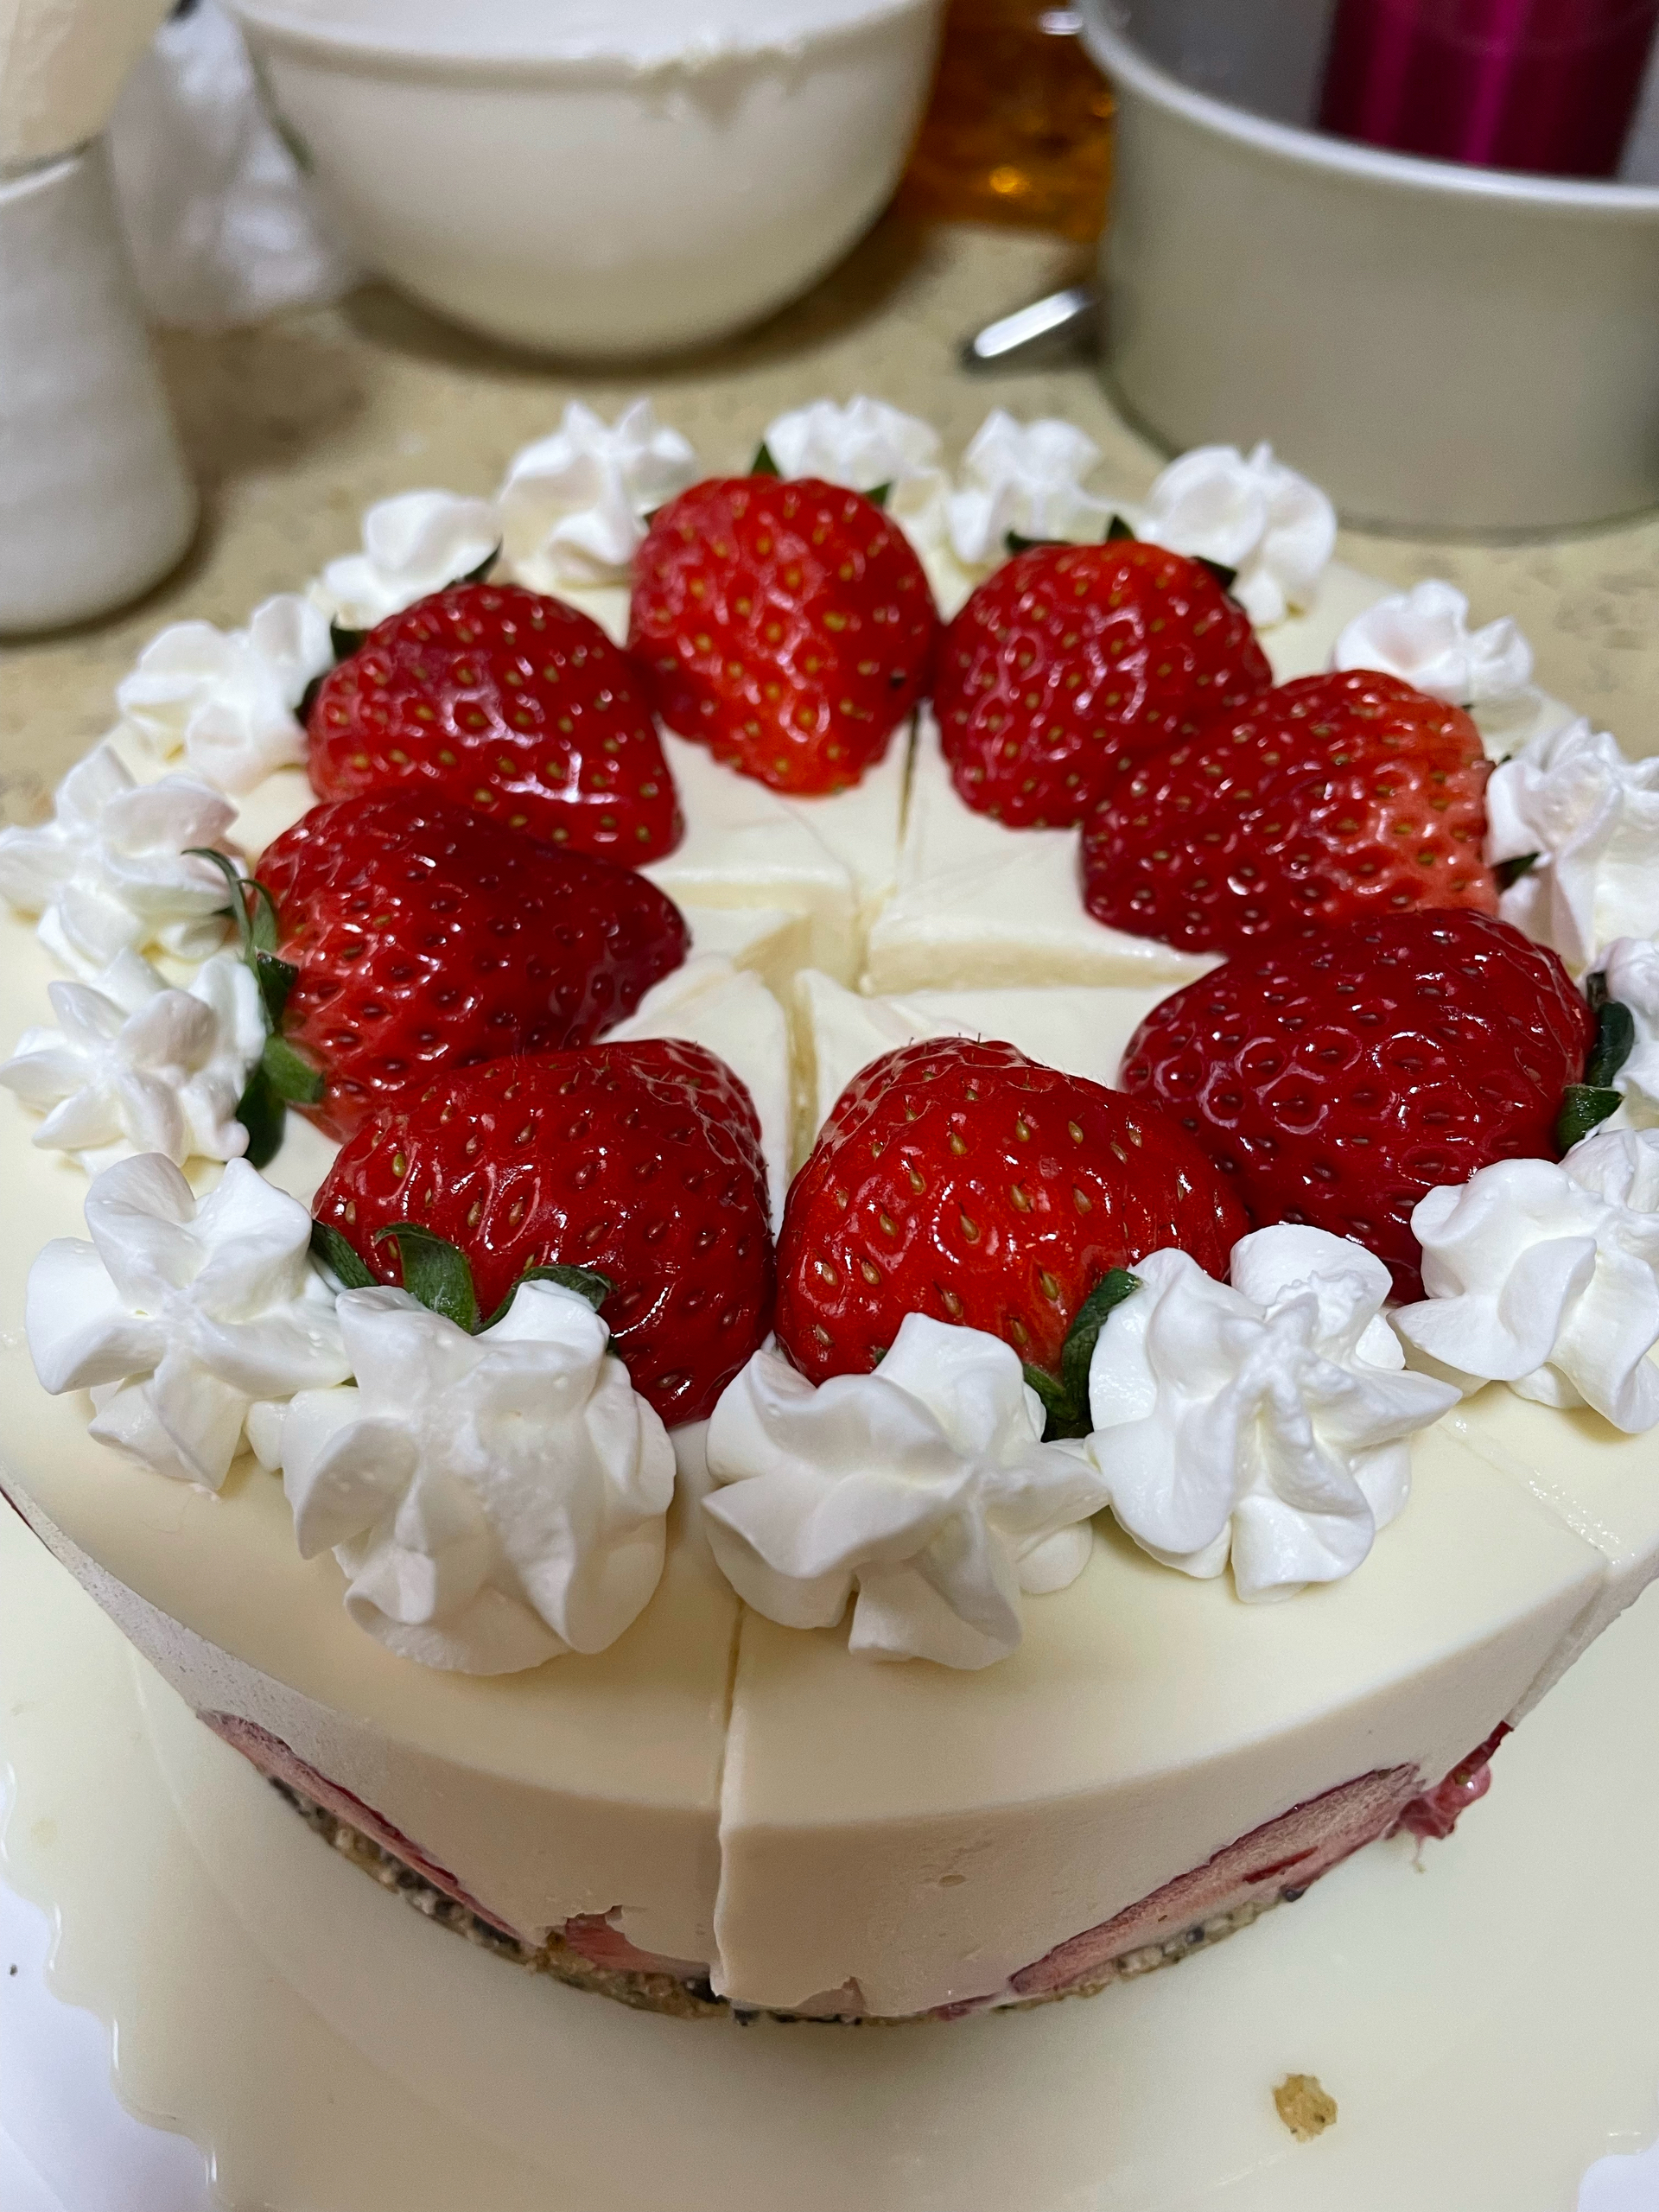 超简单的草莓芝士蛋糕